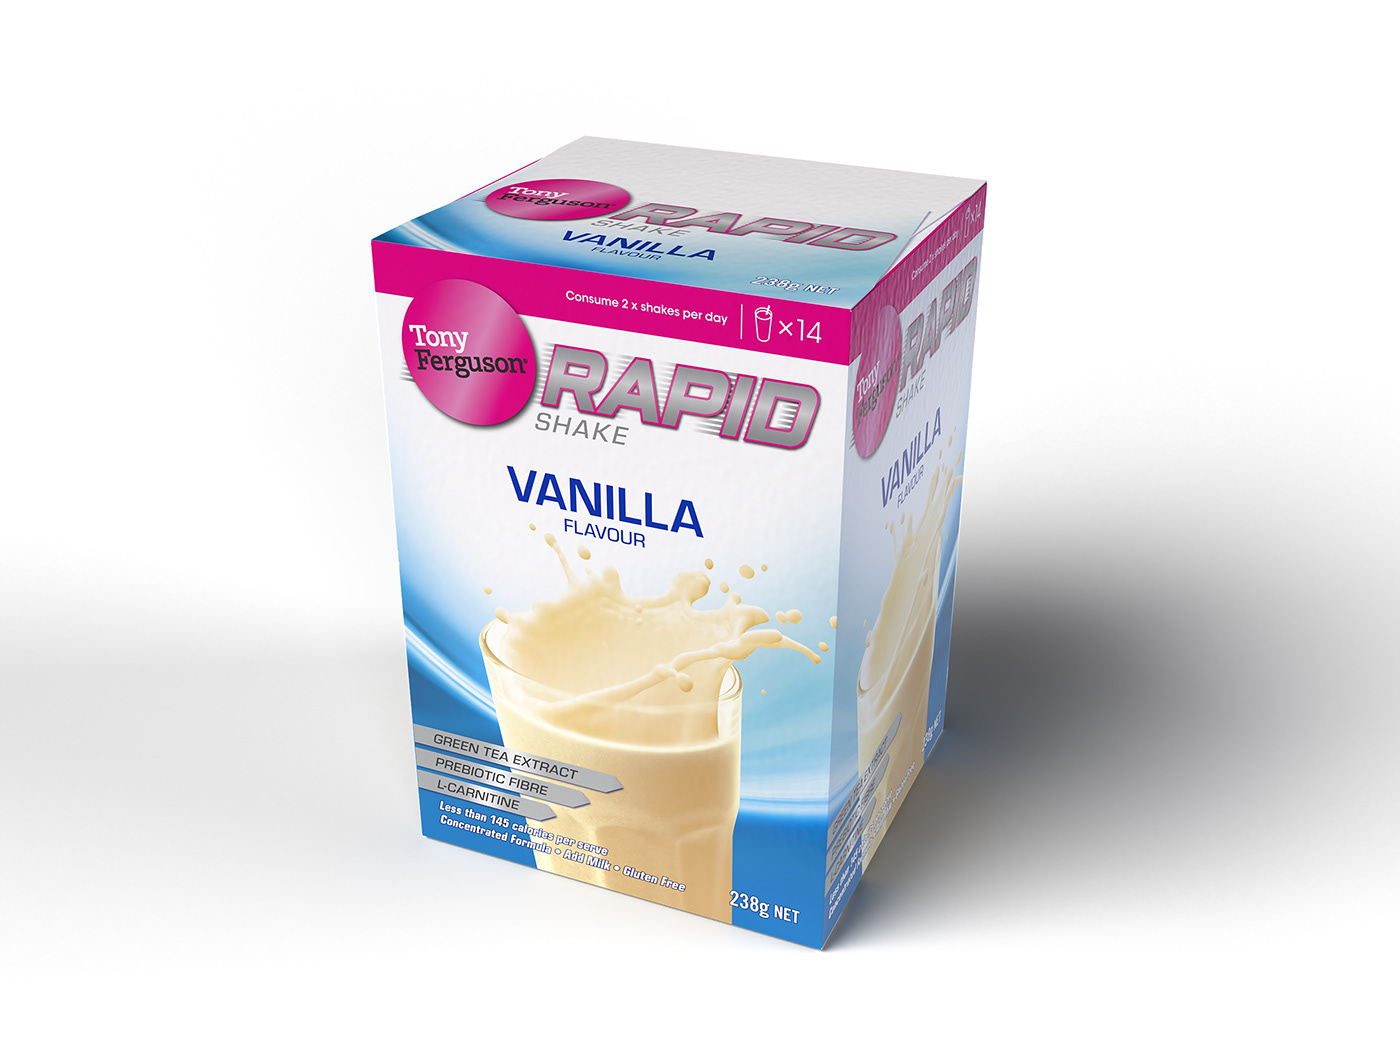 The Vanilla variant from the Tony Ferguson Rapid Shake range.